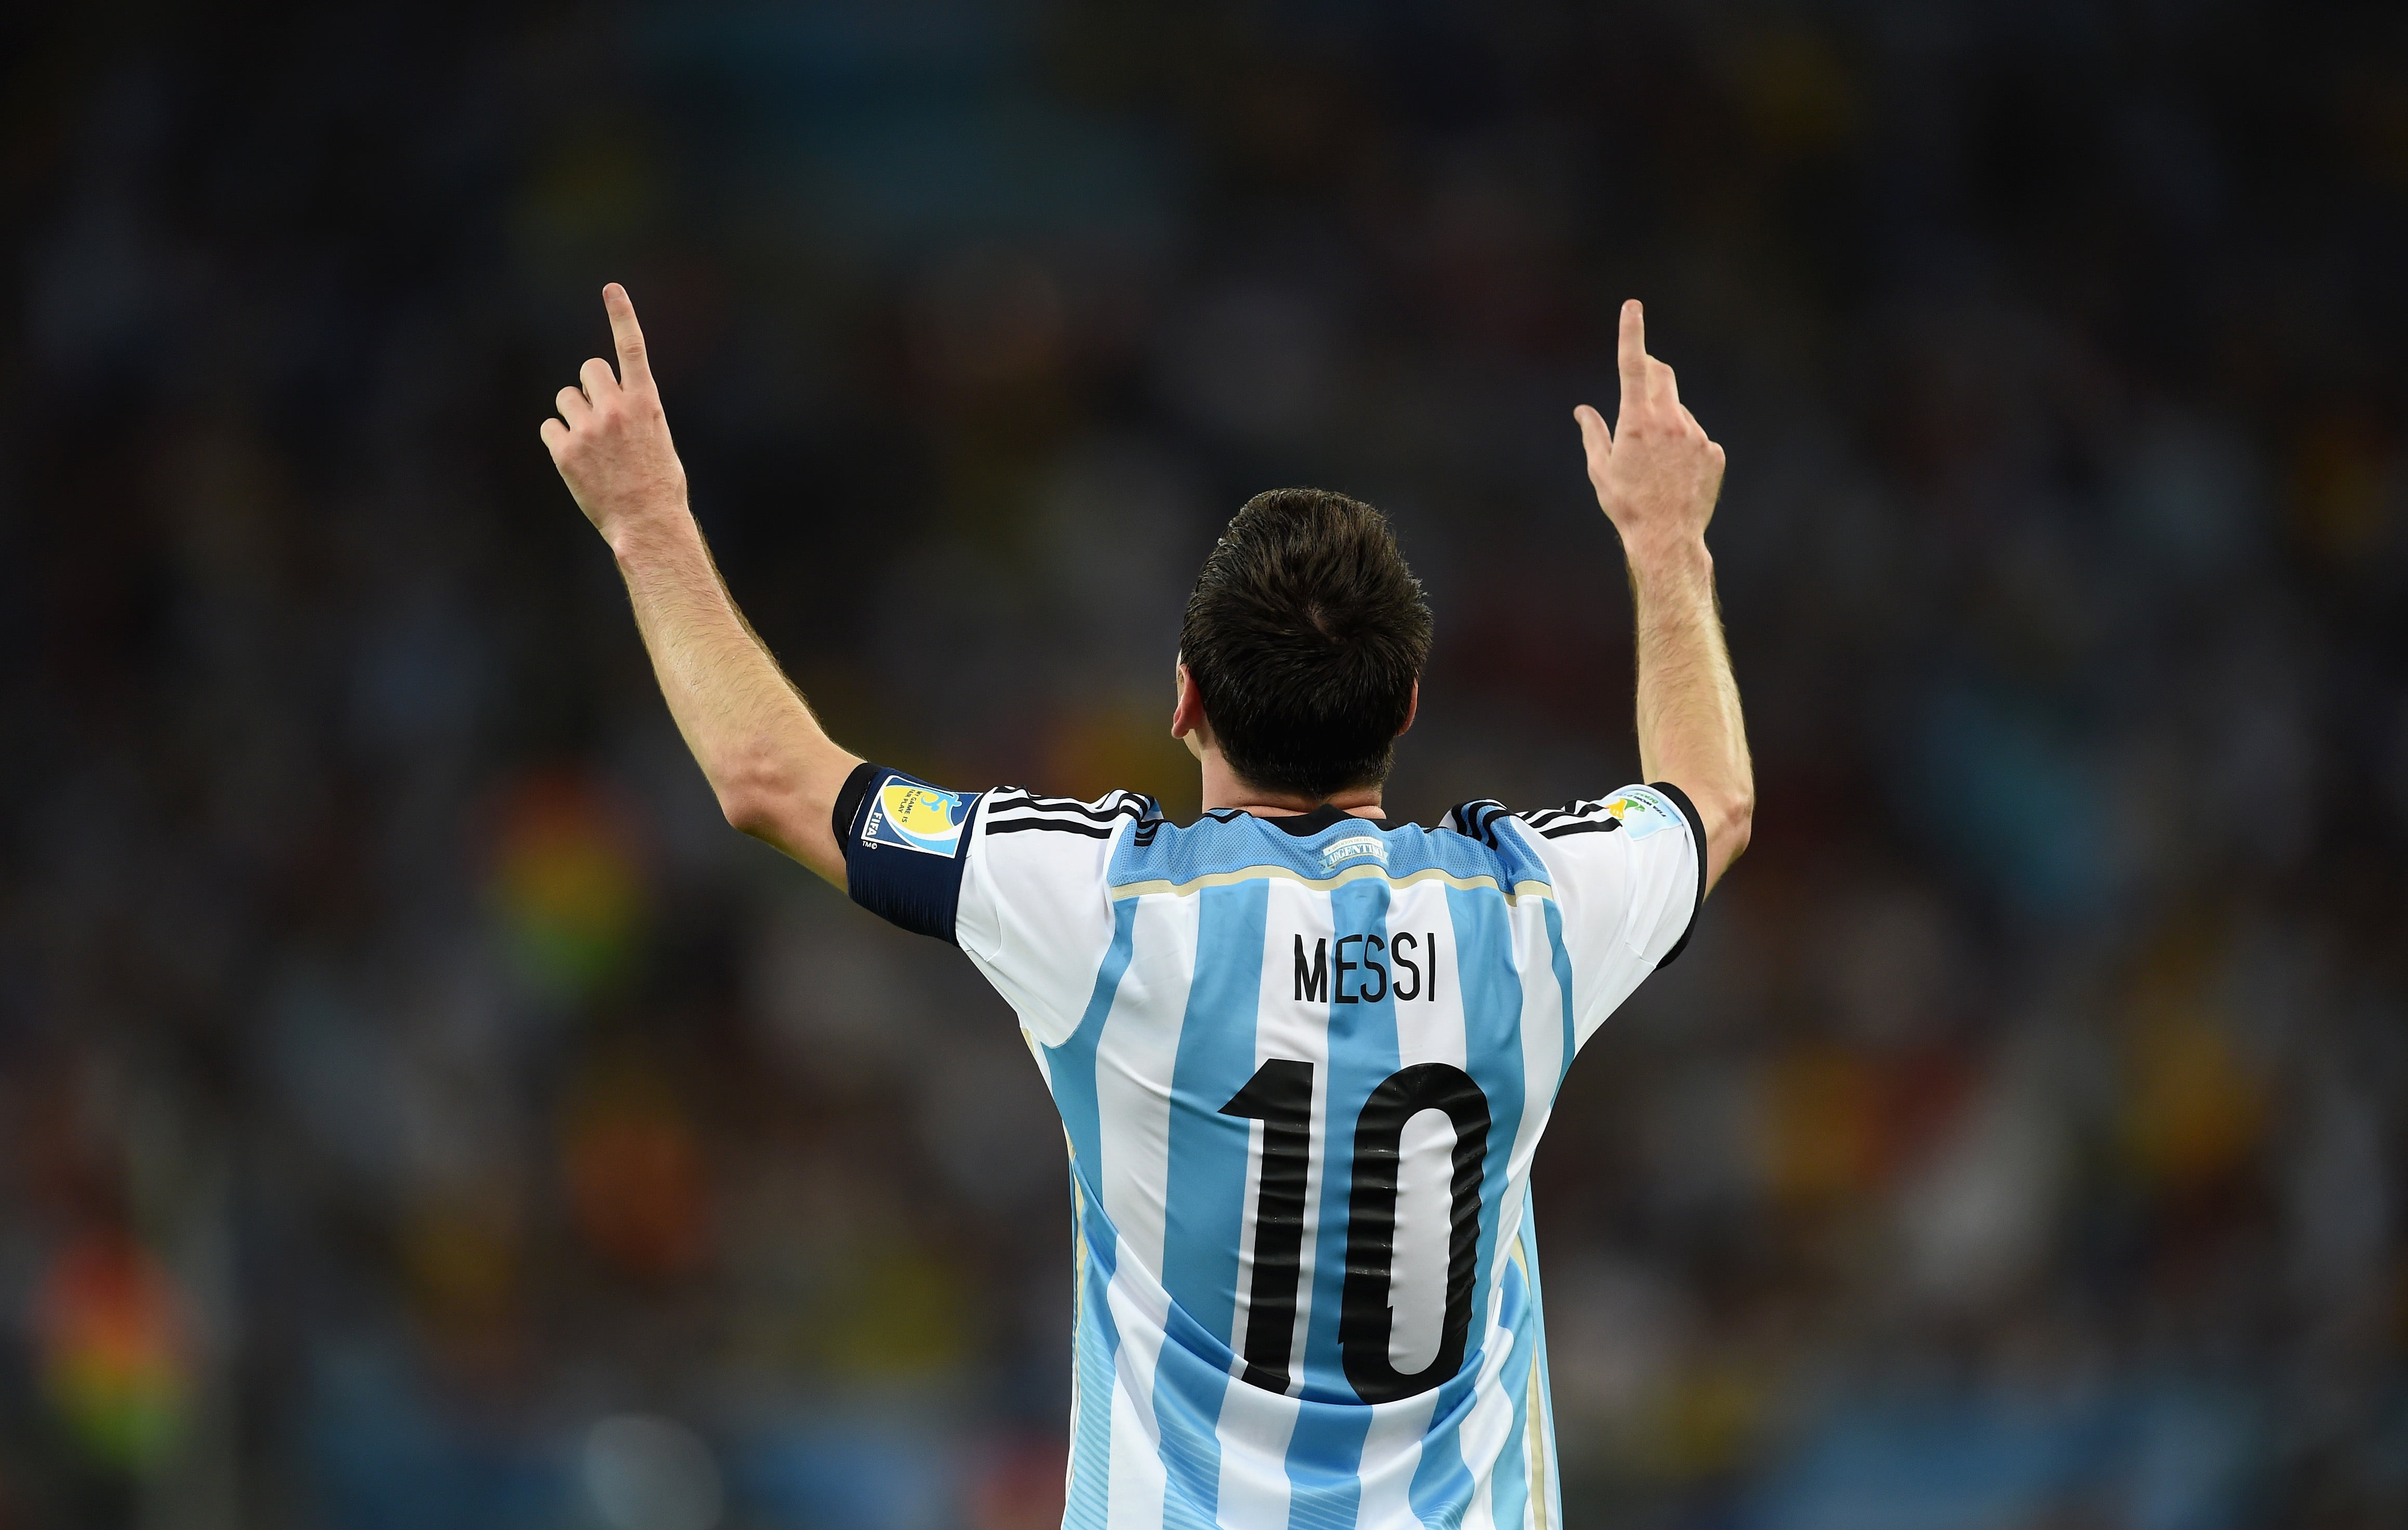 Hâm mộ Messi và đội bóng Barcelona? Hãy chiêm ngưỡng những hình nền đẹp với chiếc áo của huyền thoại này. Tận hưởng ý nghĩa của màu xanh-grenn và đỏ-buồn trên trang phục đầy tinh thần chiến đấu của Messi.